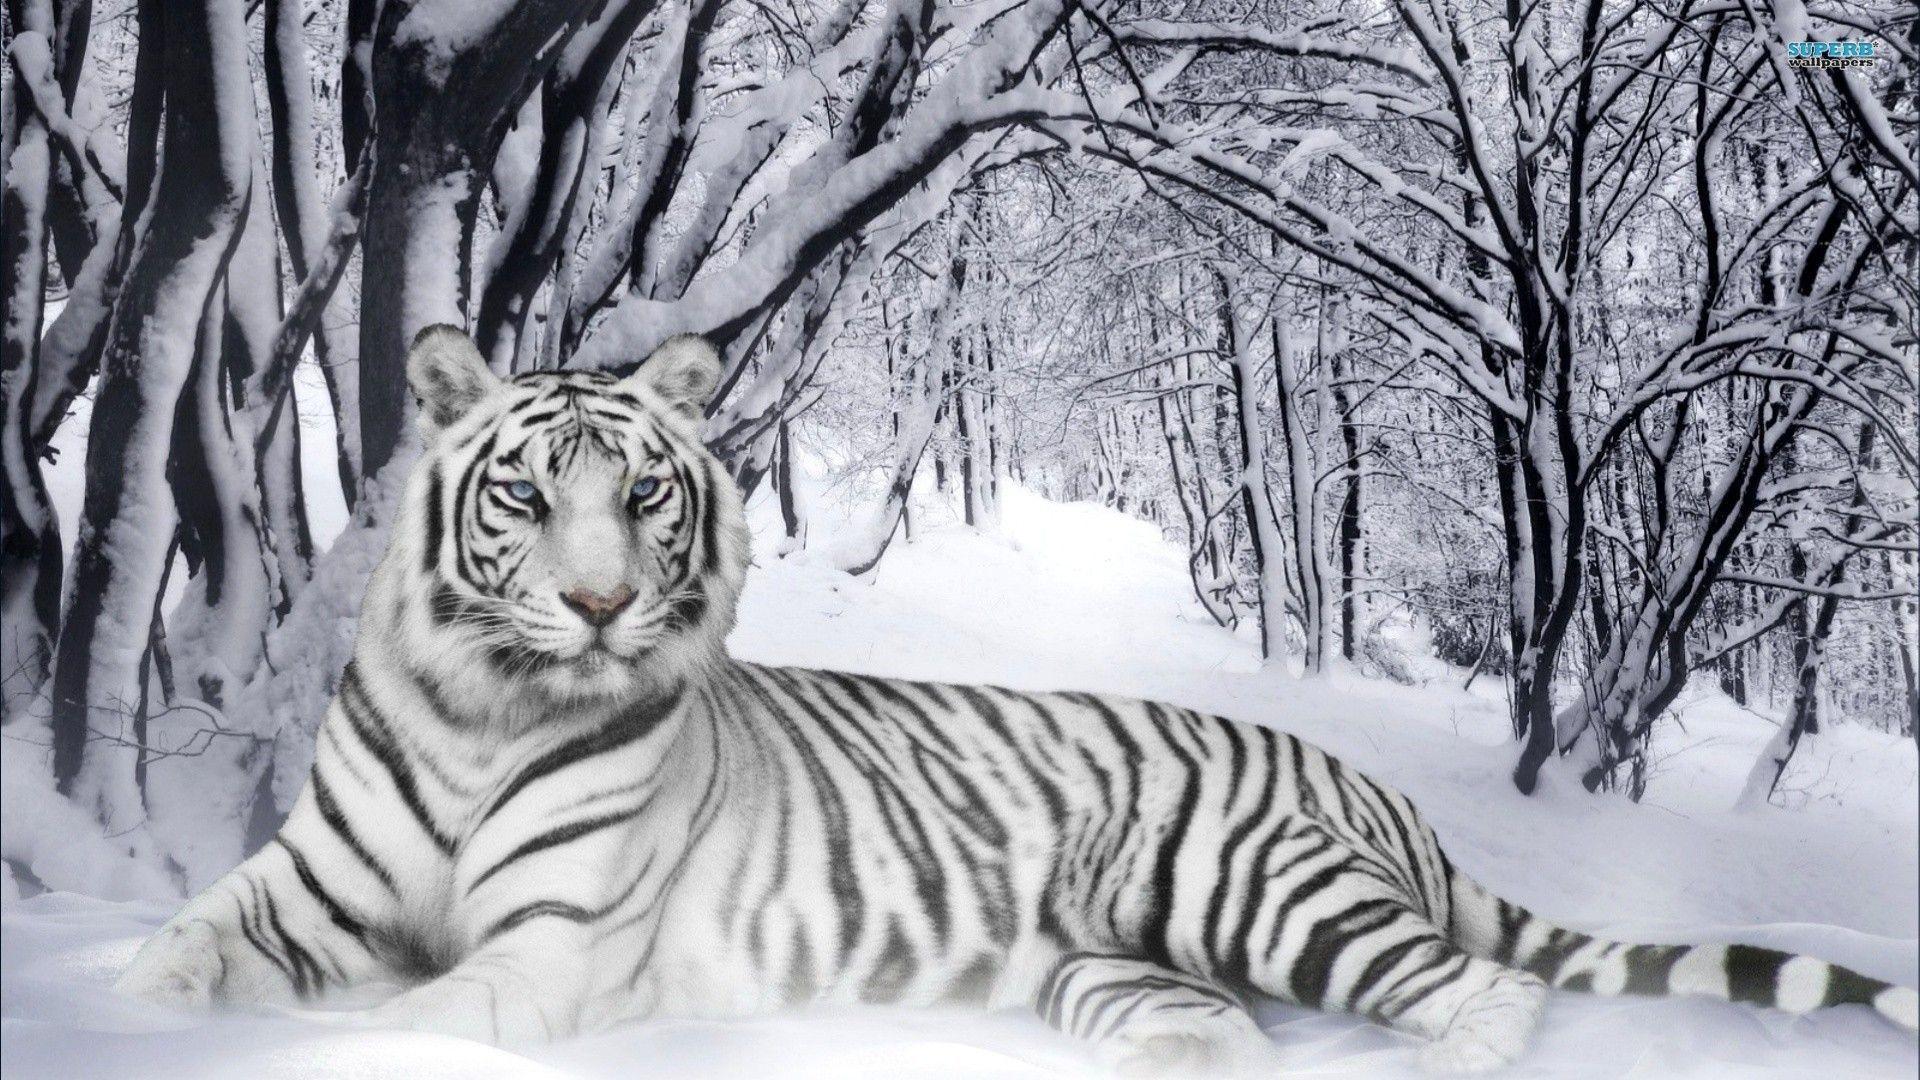 Animals For > Tiger Image For Desktop